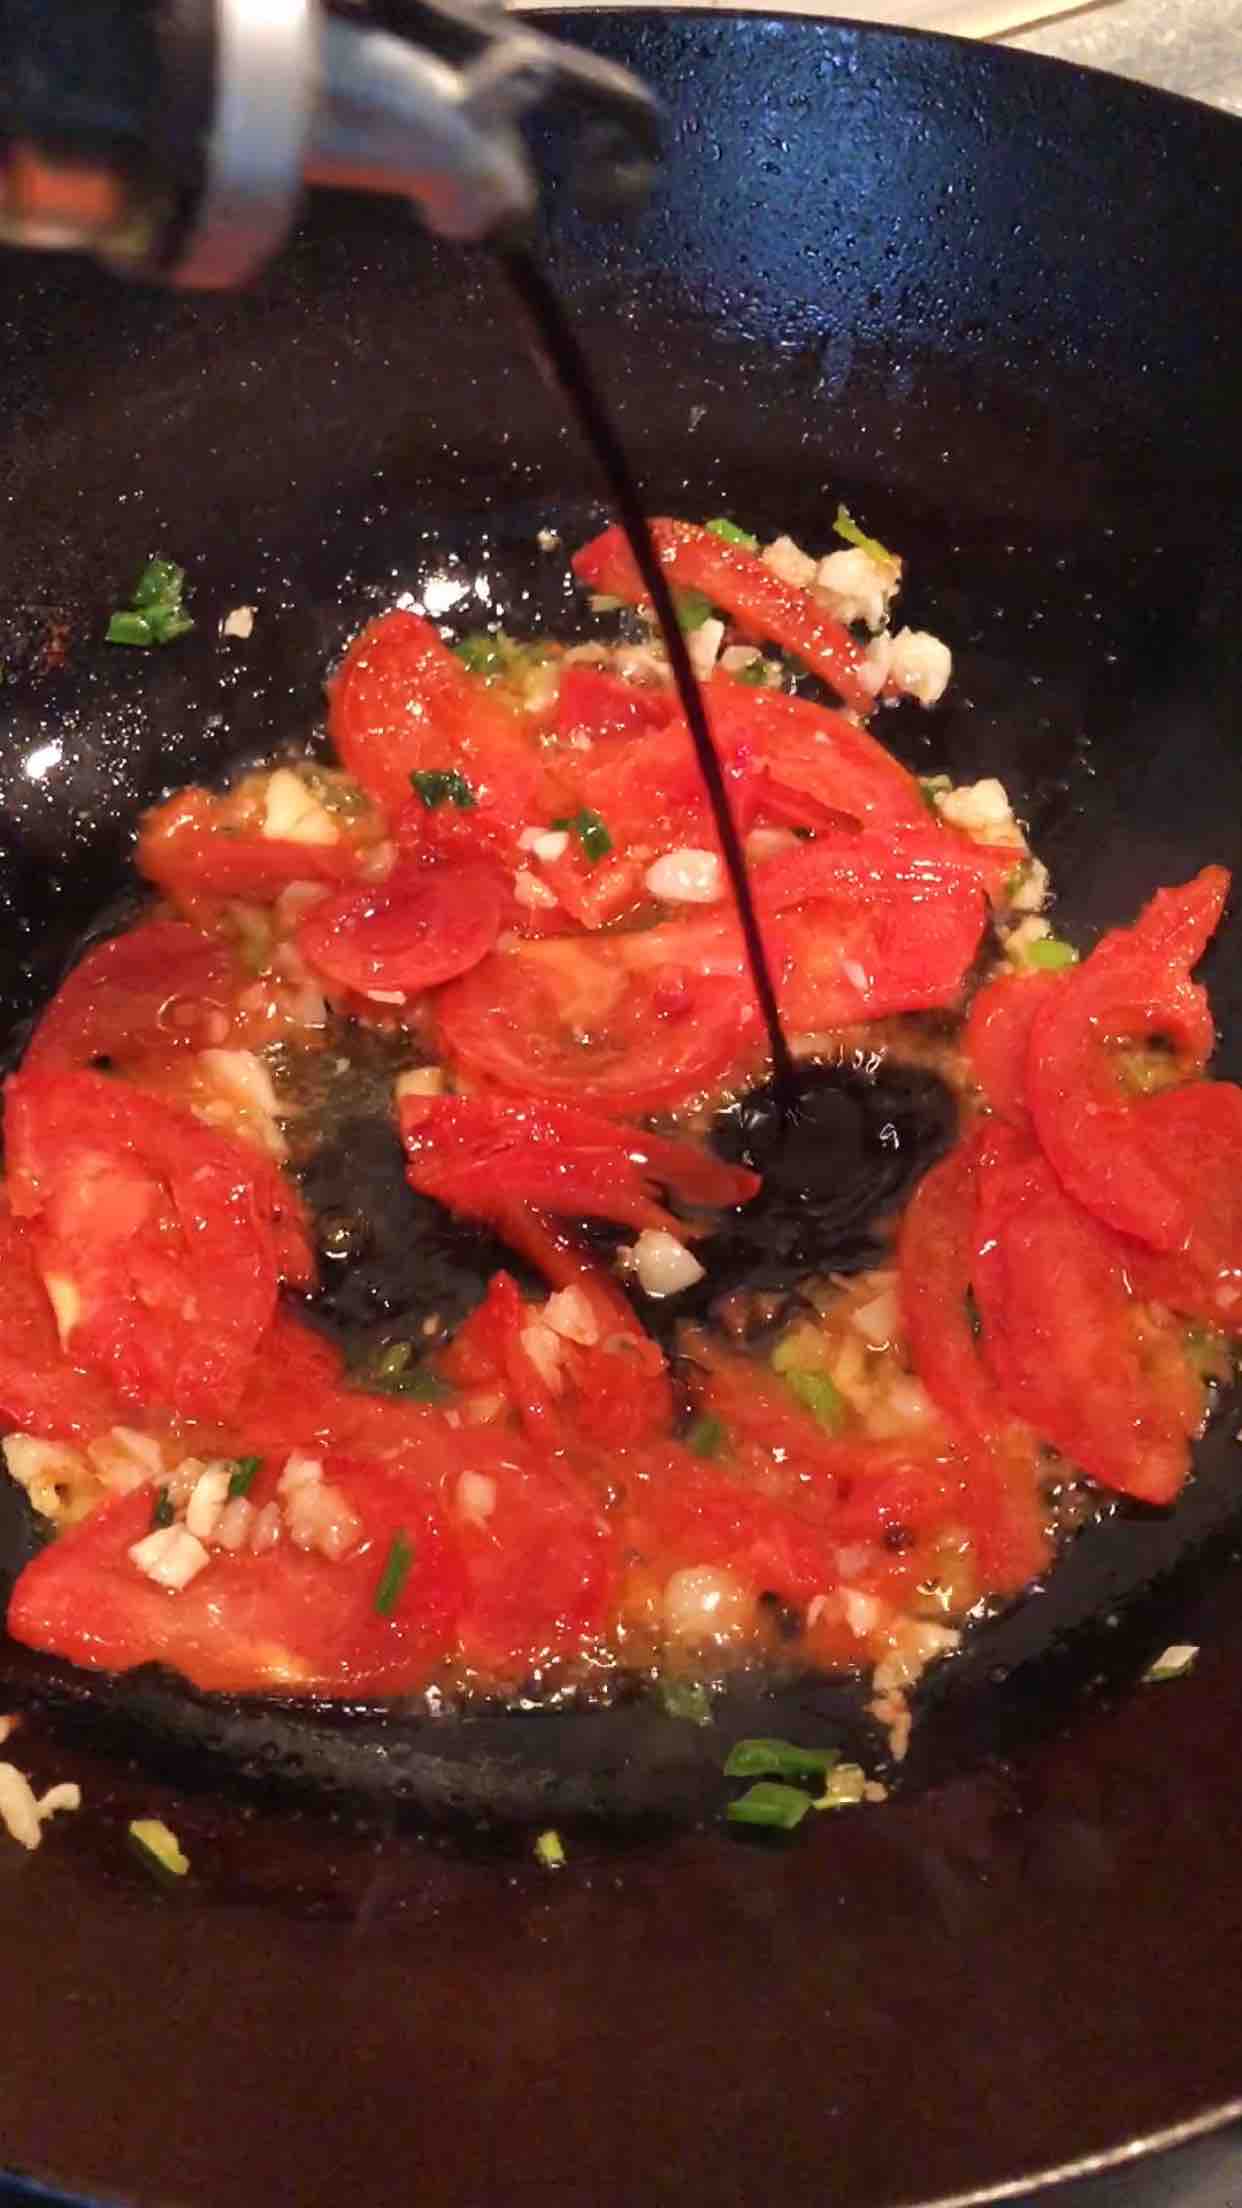 Shredded Potatoes in Tomato Sauce recipe